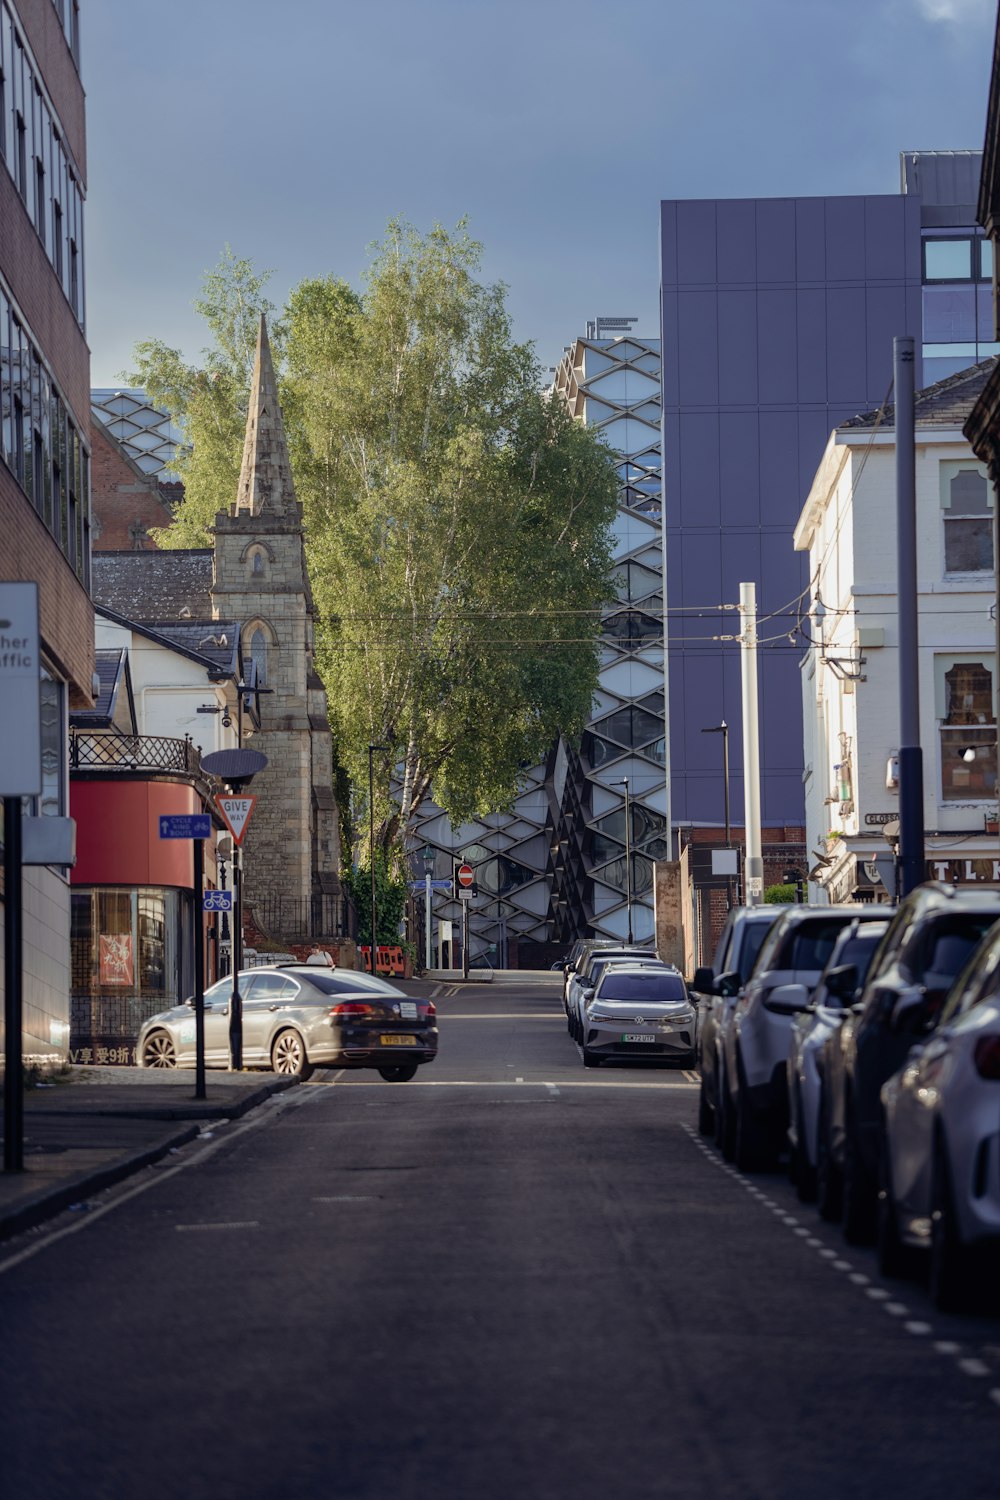 Una calle de la ciudad llena de coches aparcados junto a edificios altos